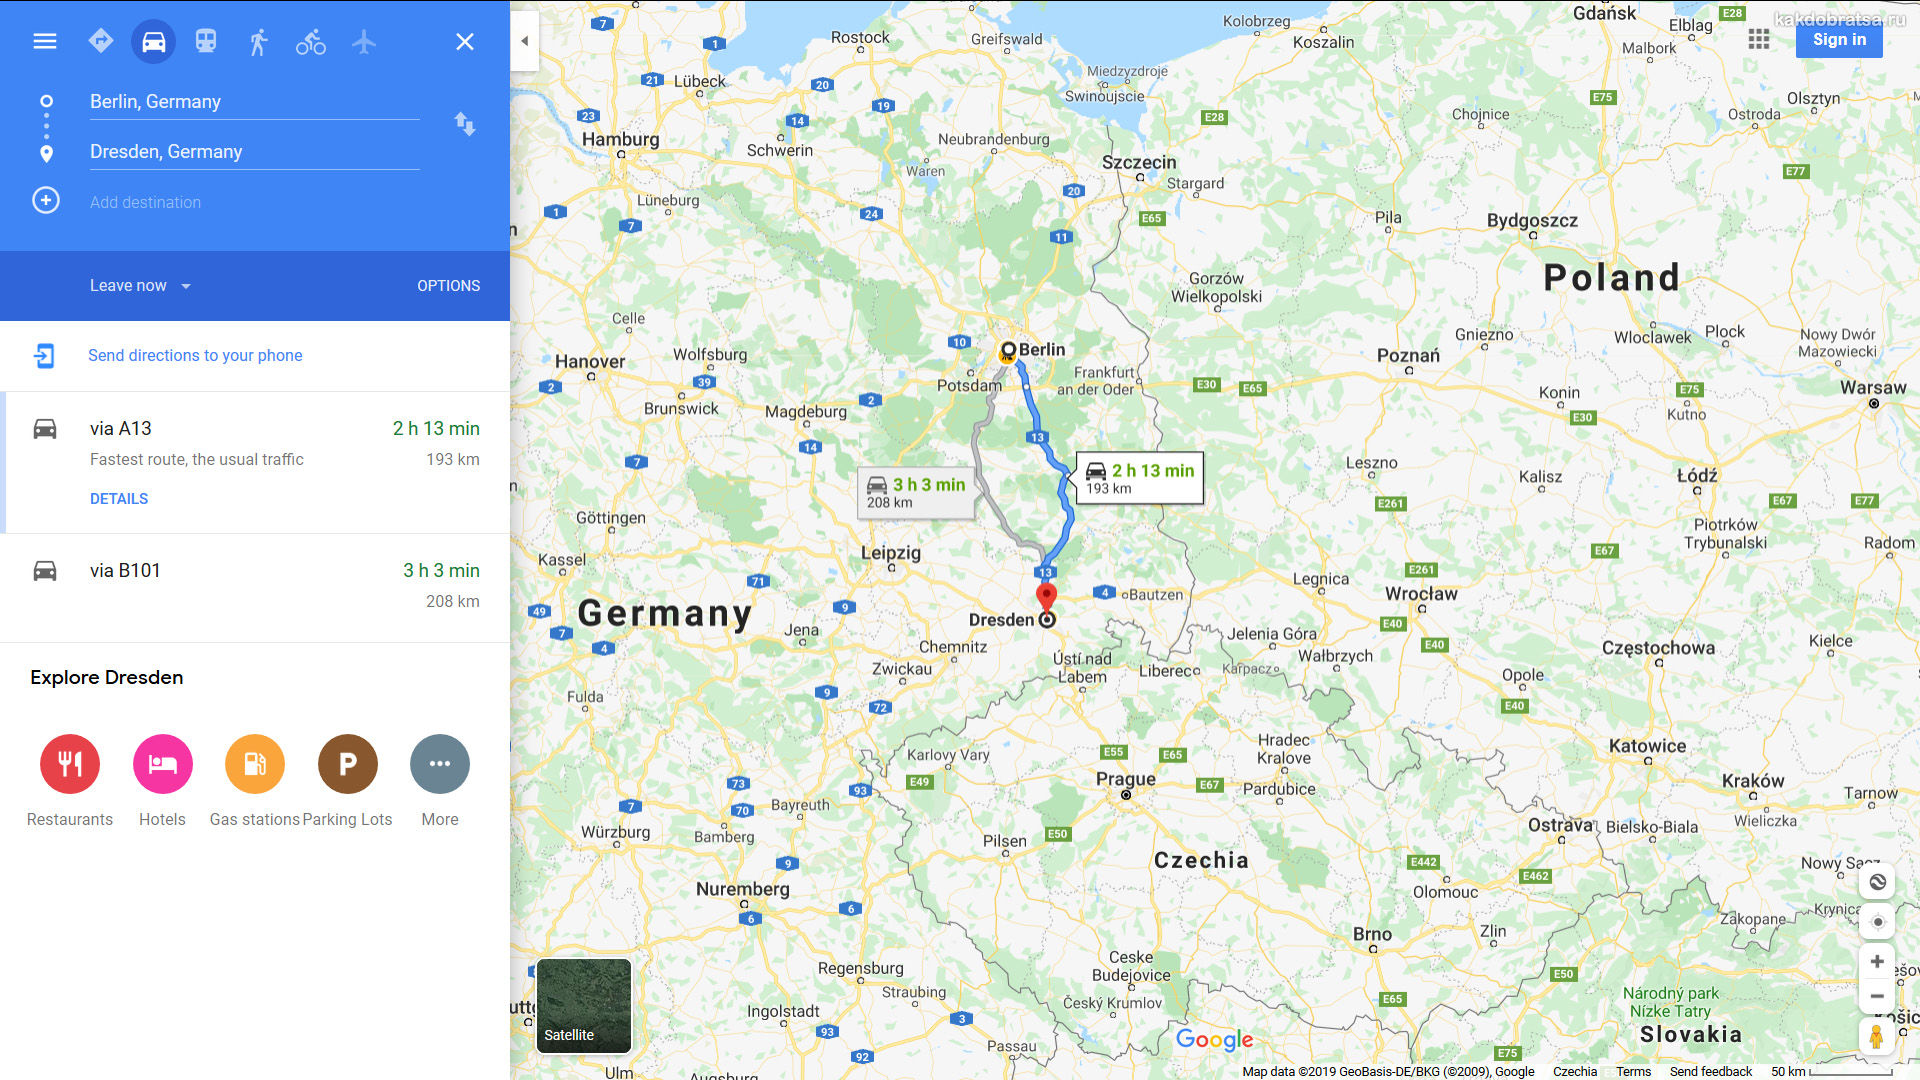 Мюнхен - берлин: как добраться, какое расстояние?